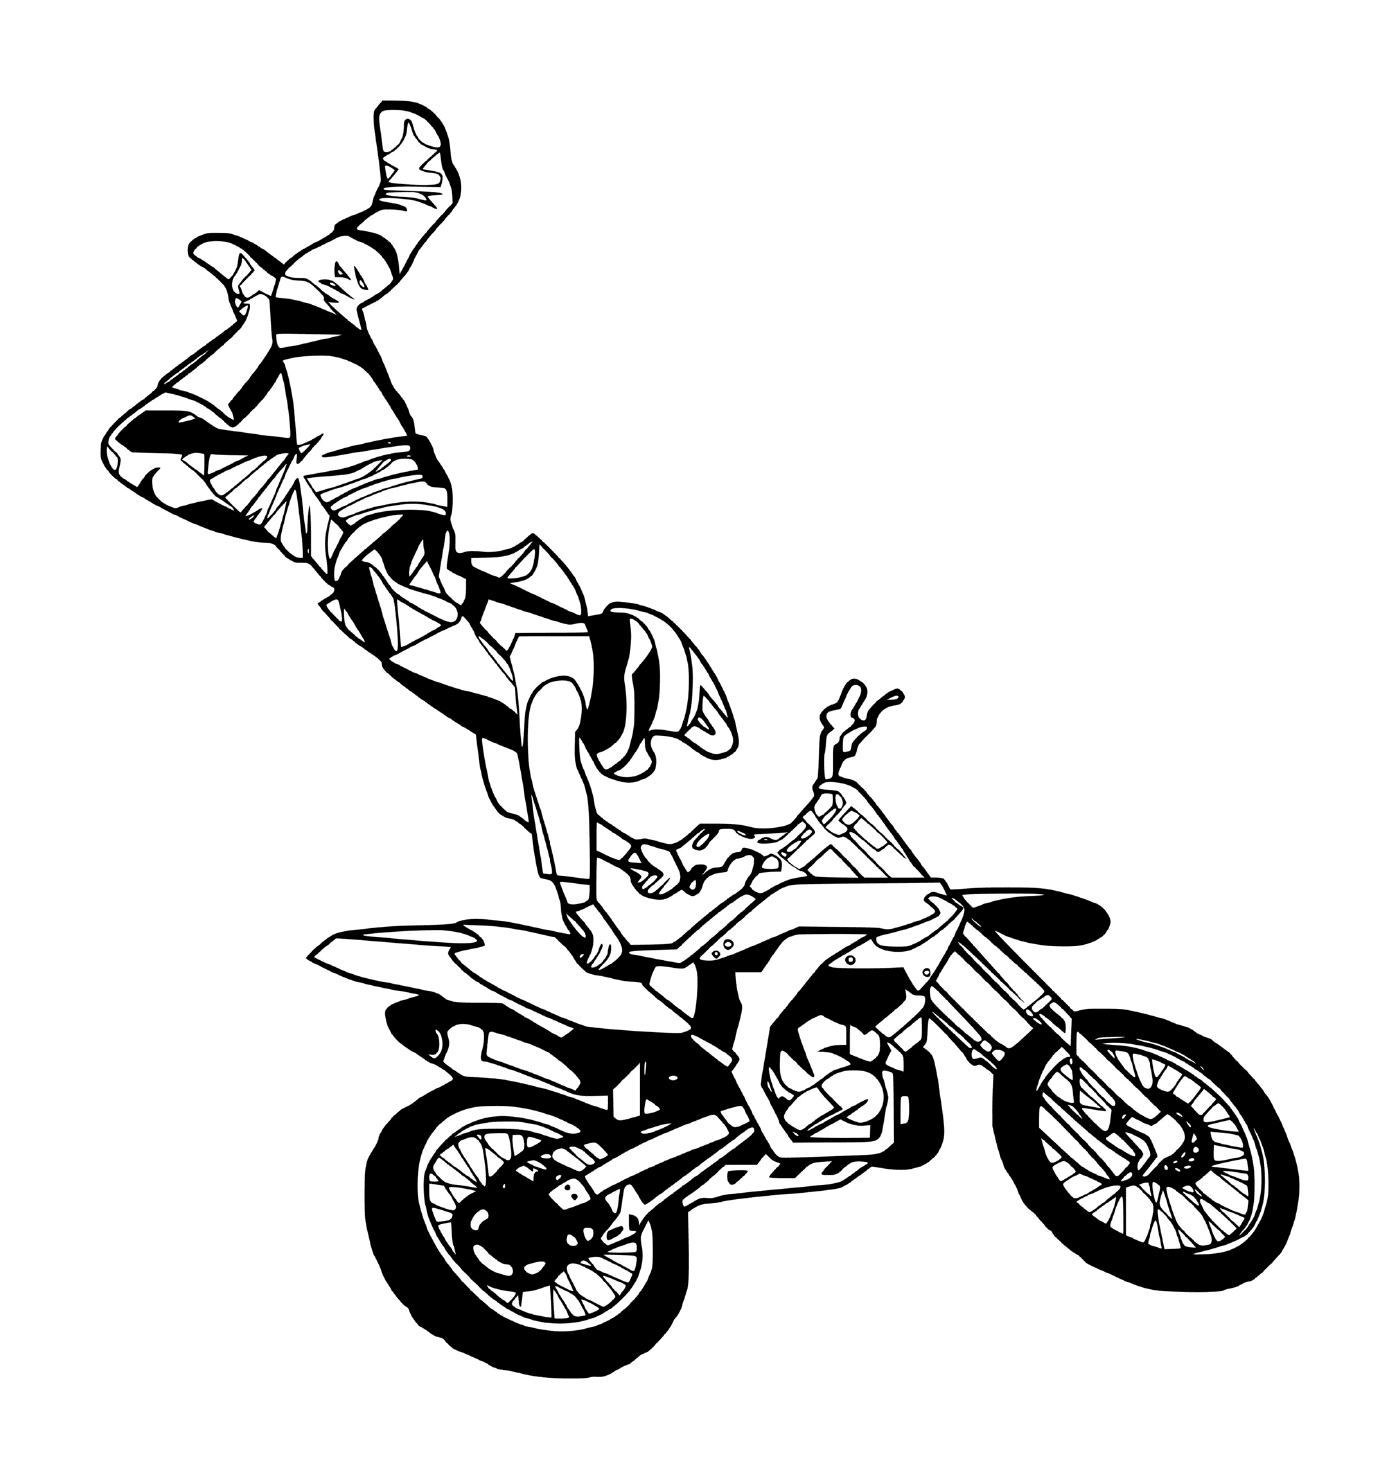  homem fazendo backflip em motocross 